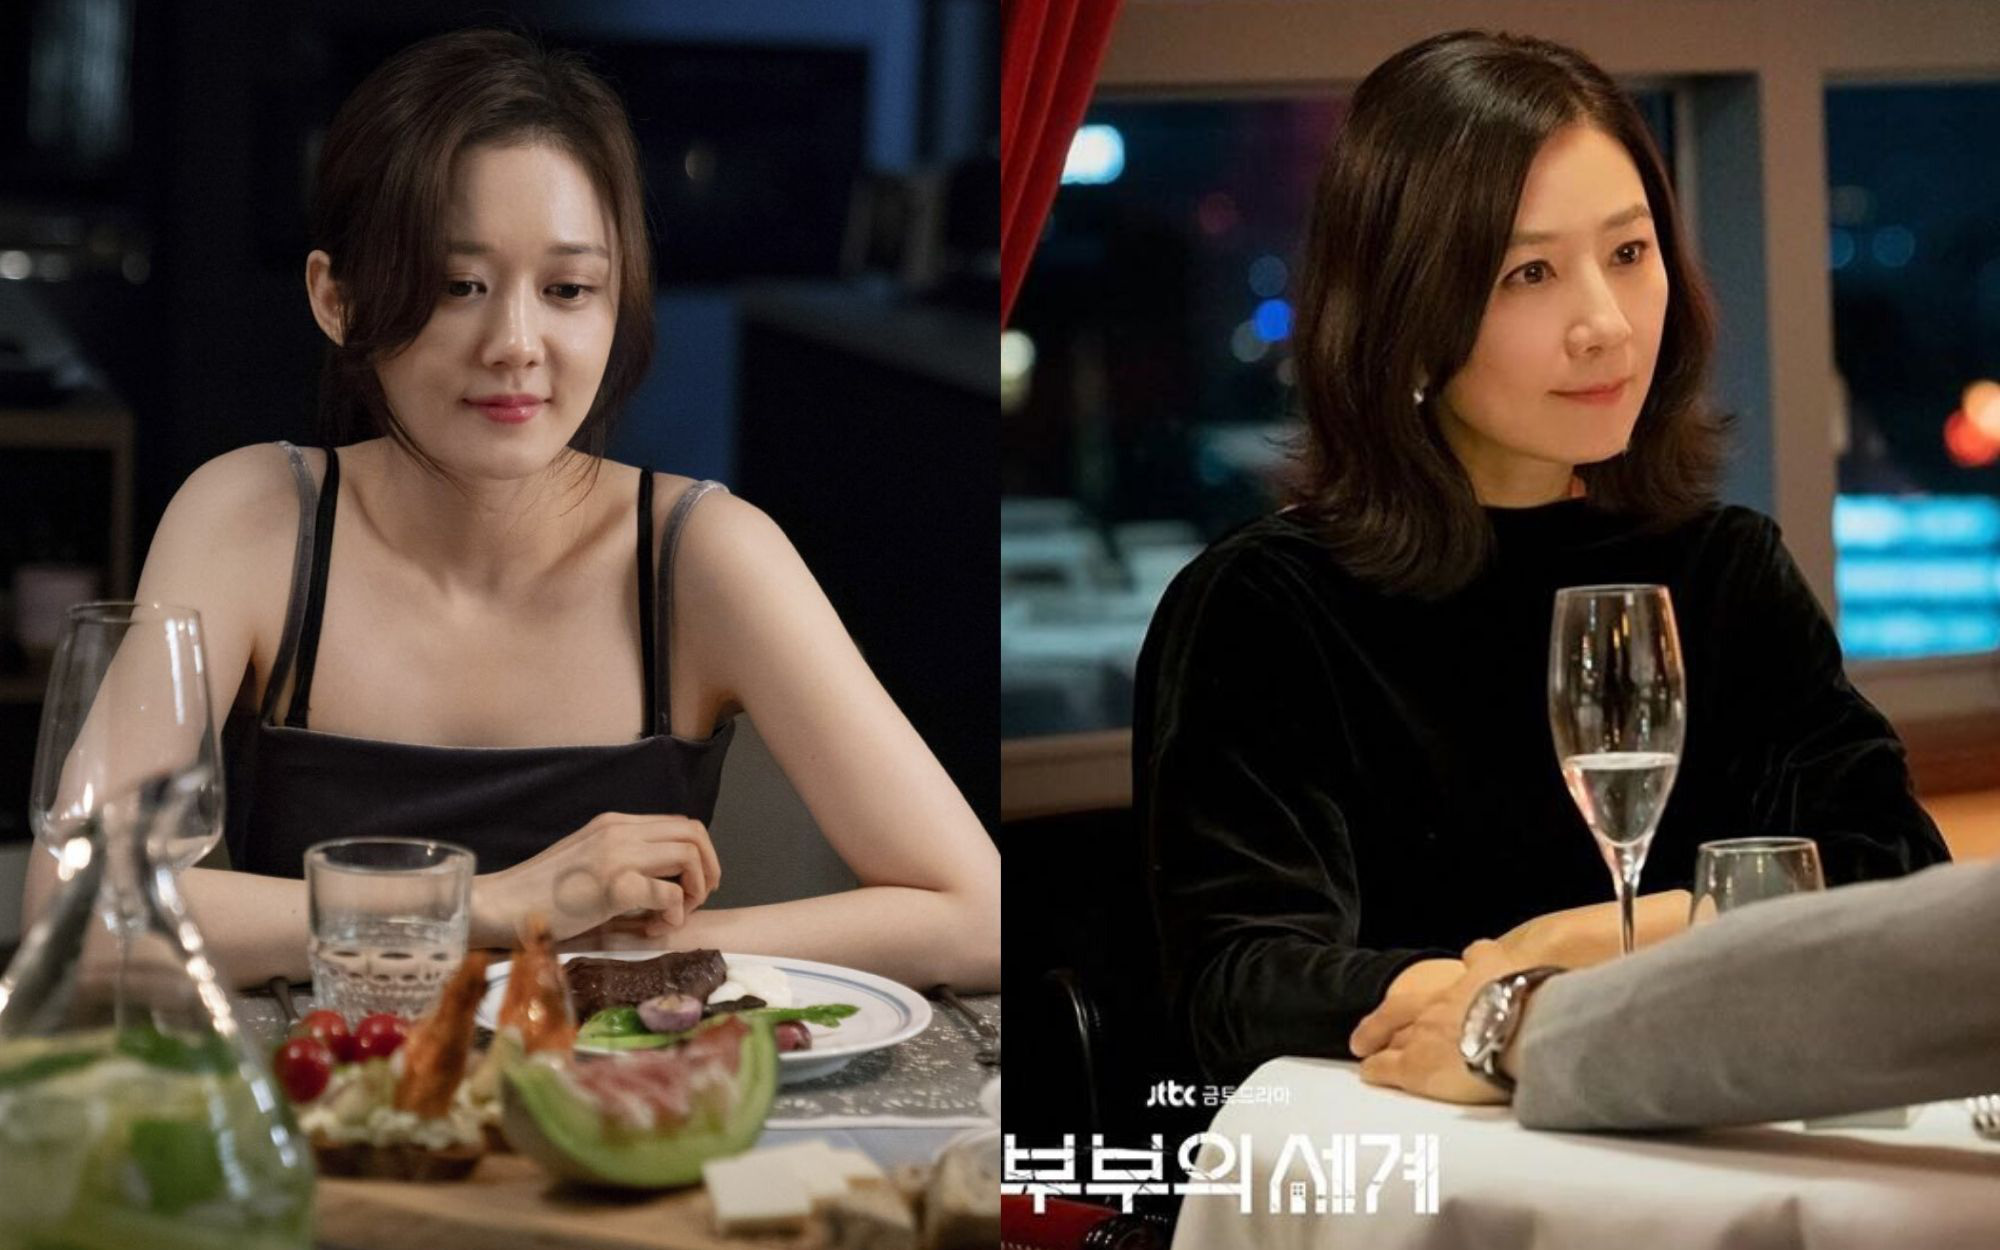 &quot;Bà cả&quot; Jang Nara và Kim Hee Ae đều thích diện đồ đen khi hẹn hò, ngoài việc toát lên sự sang chảnh thì còn chứa đựng ẩn ý nào khác?